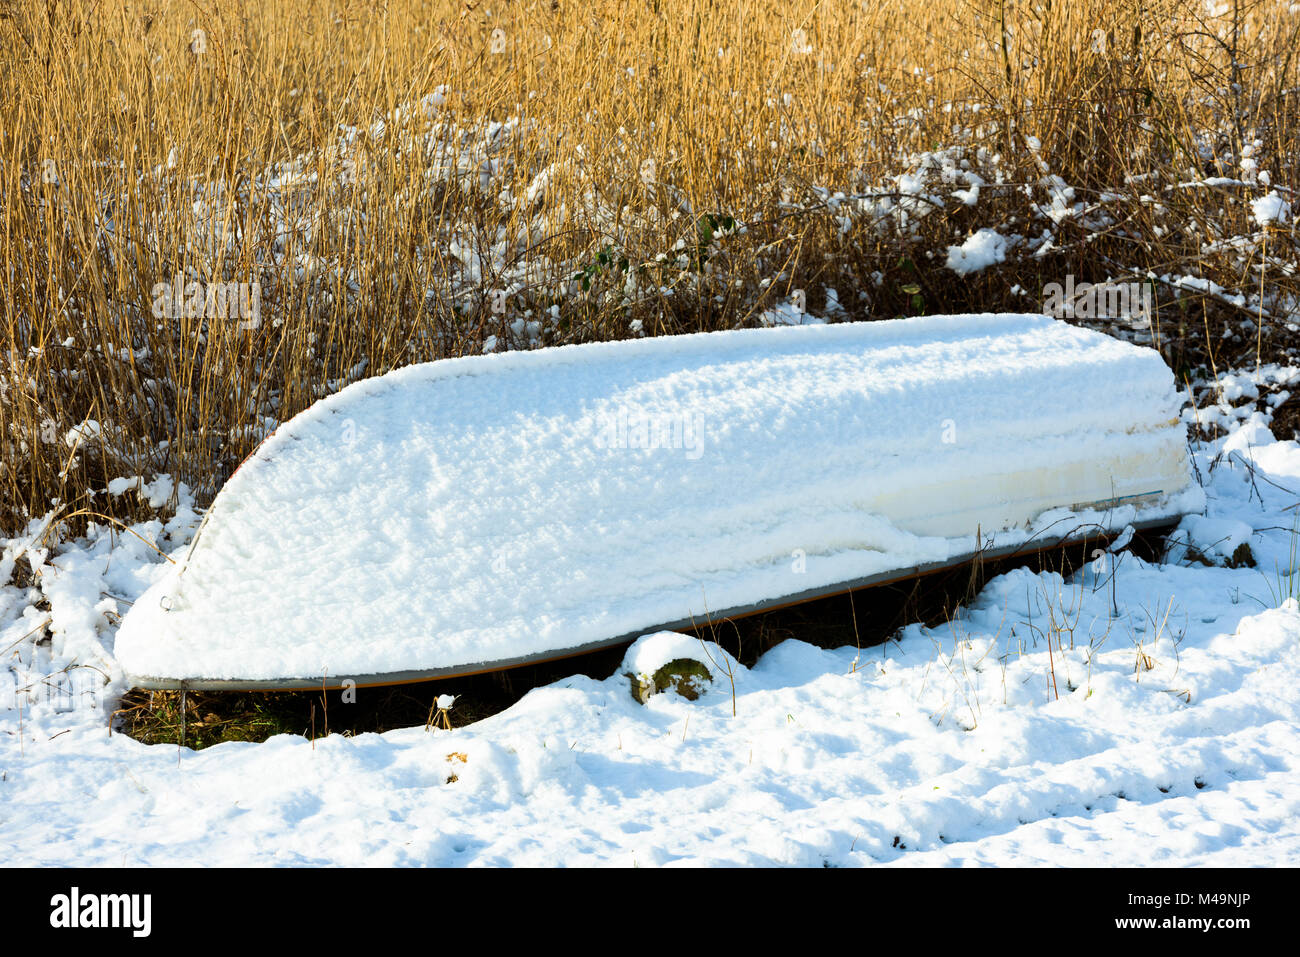 Sottosopra imbarcazione da diporto sul terreno ricoperto da uno strato sottile di neve. Reed in background. Foto Stock